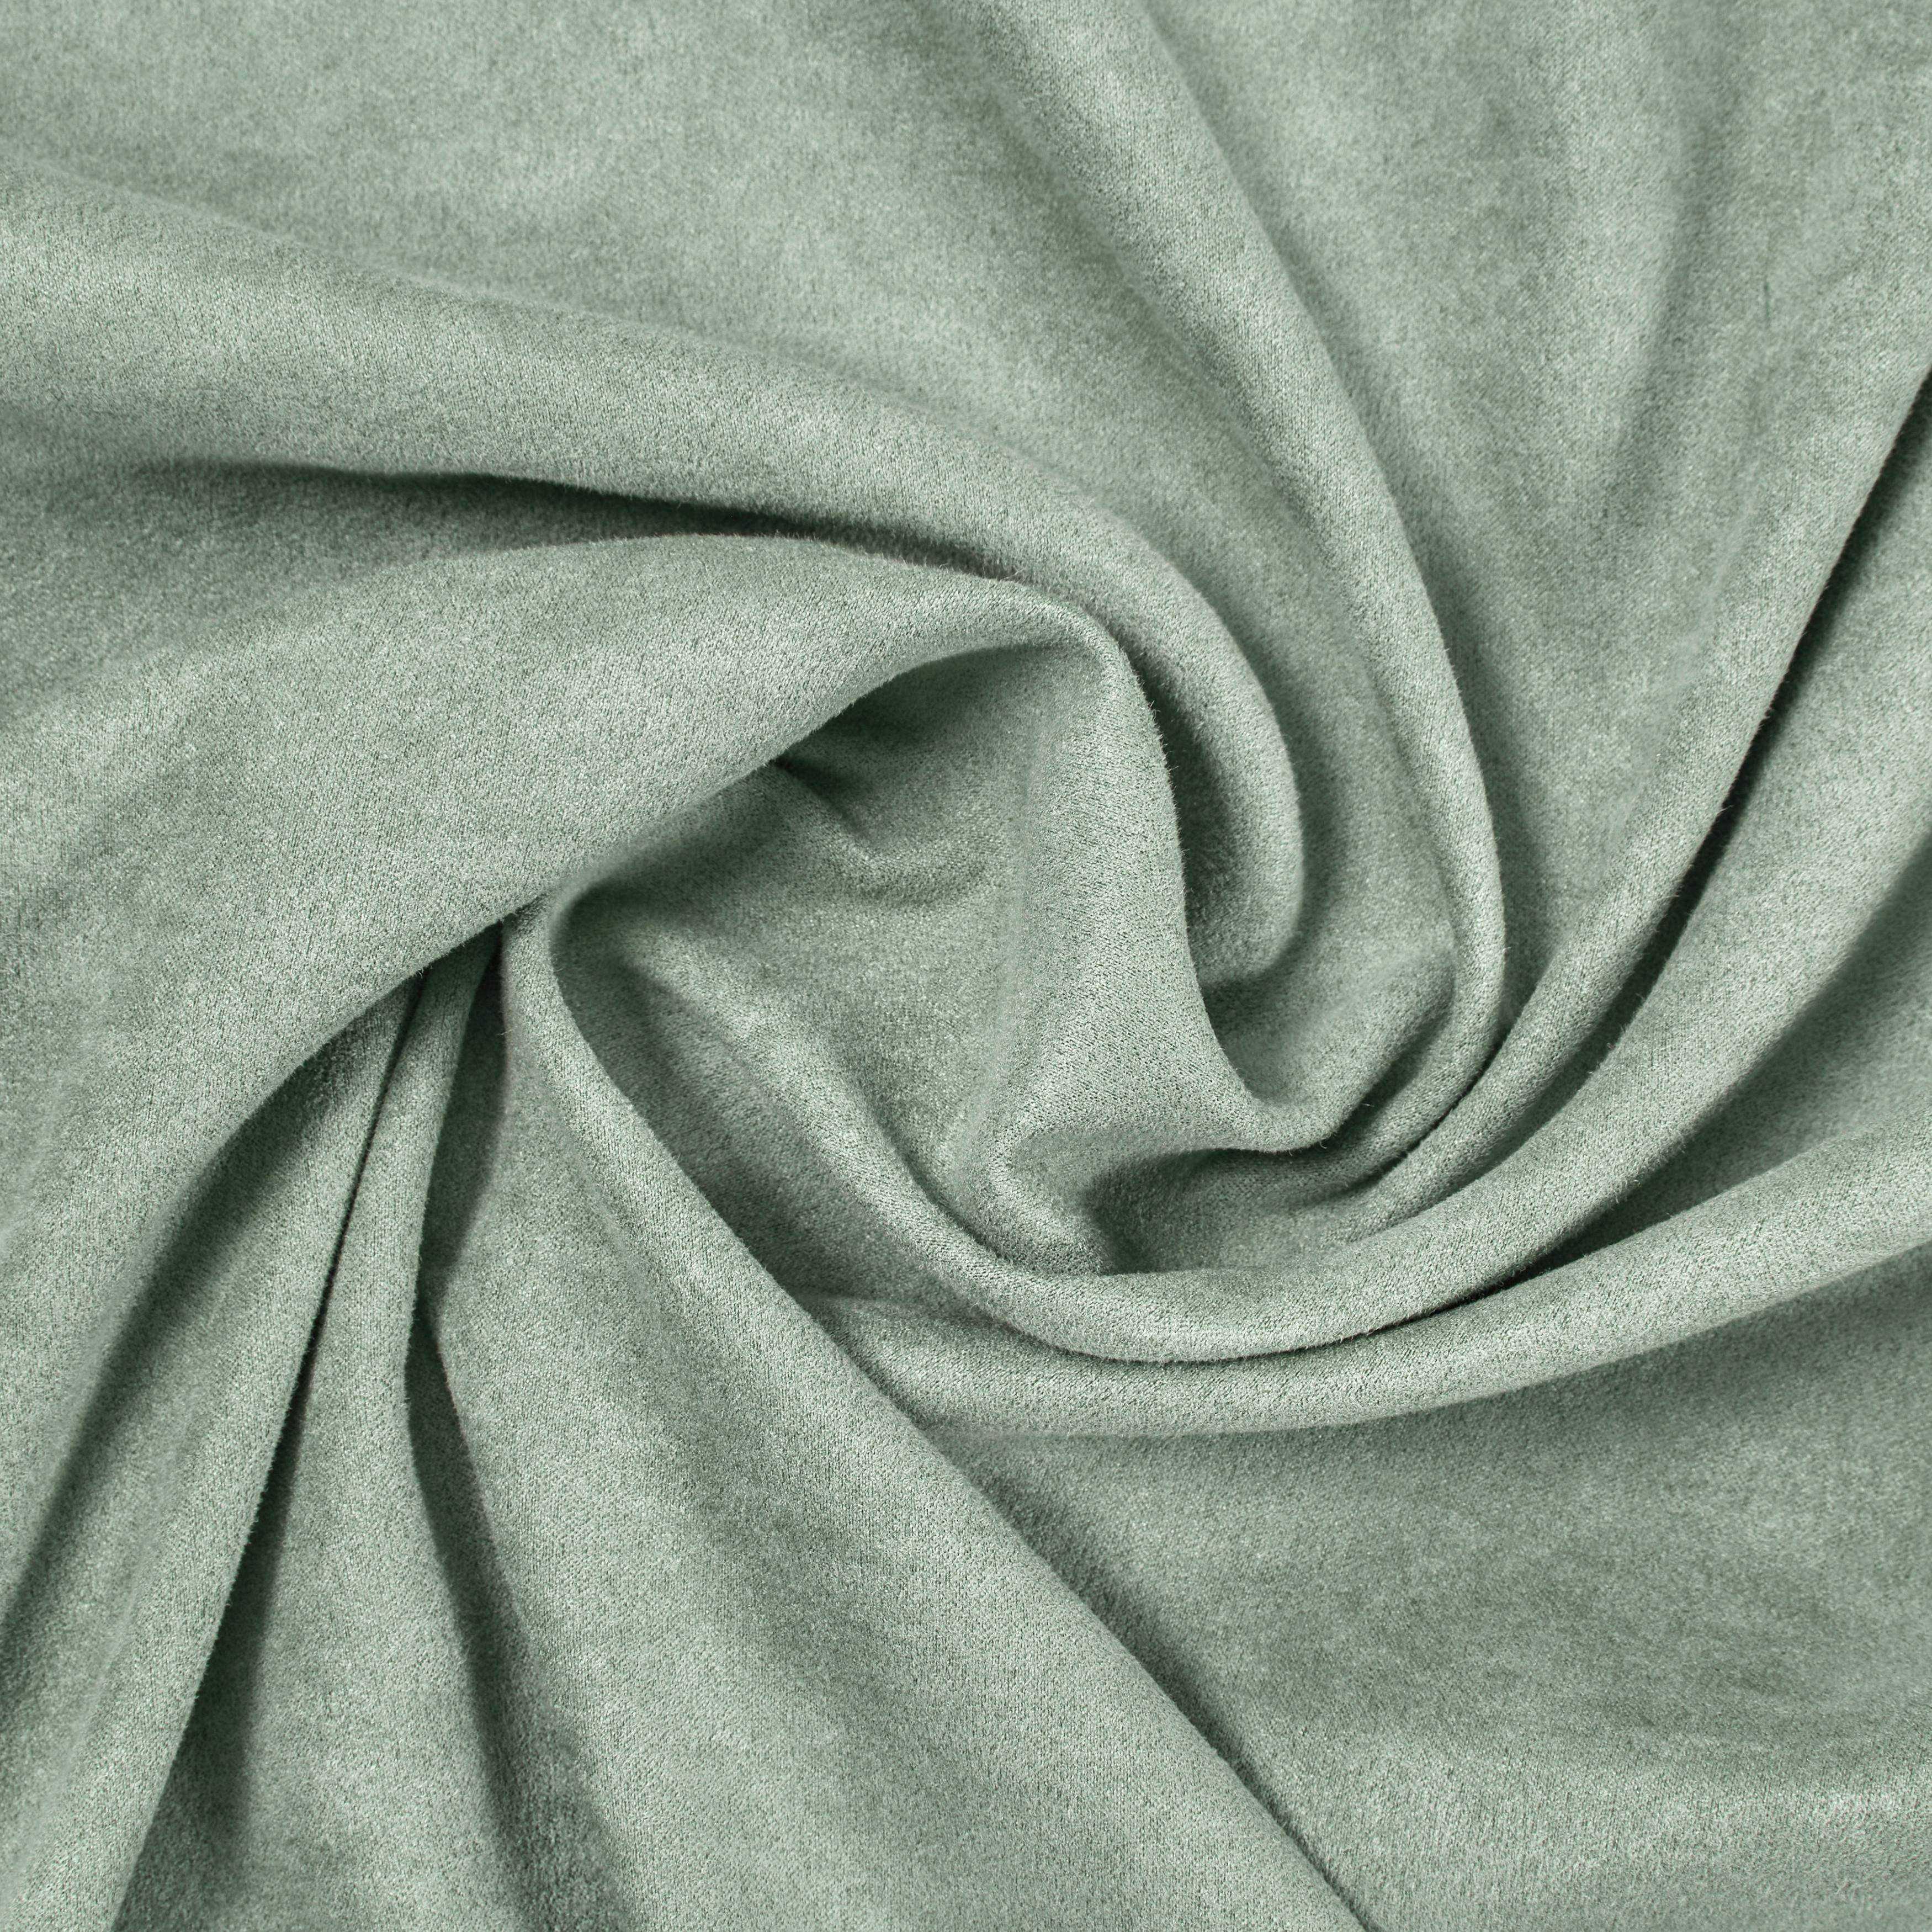 Závěs S Očky Velours, 140/245cm, Zelená - zelená, Konvenční, textil (140/245cm) - Modern Living